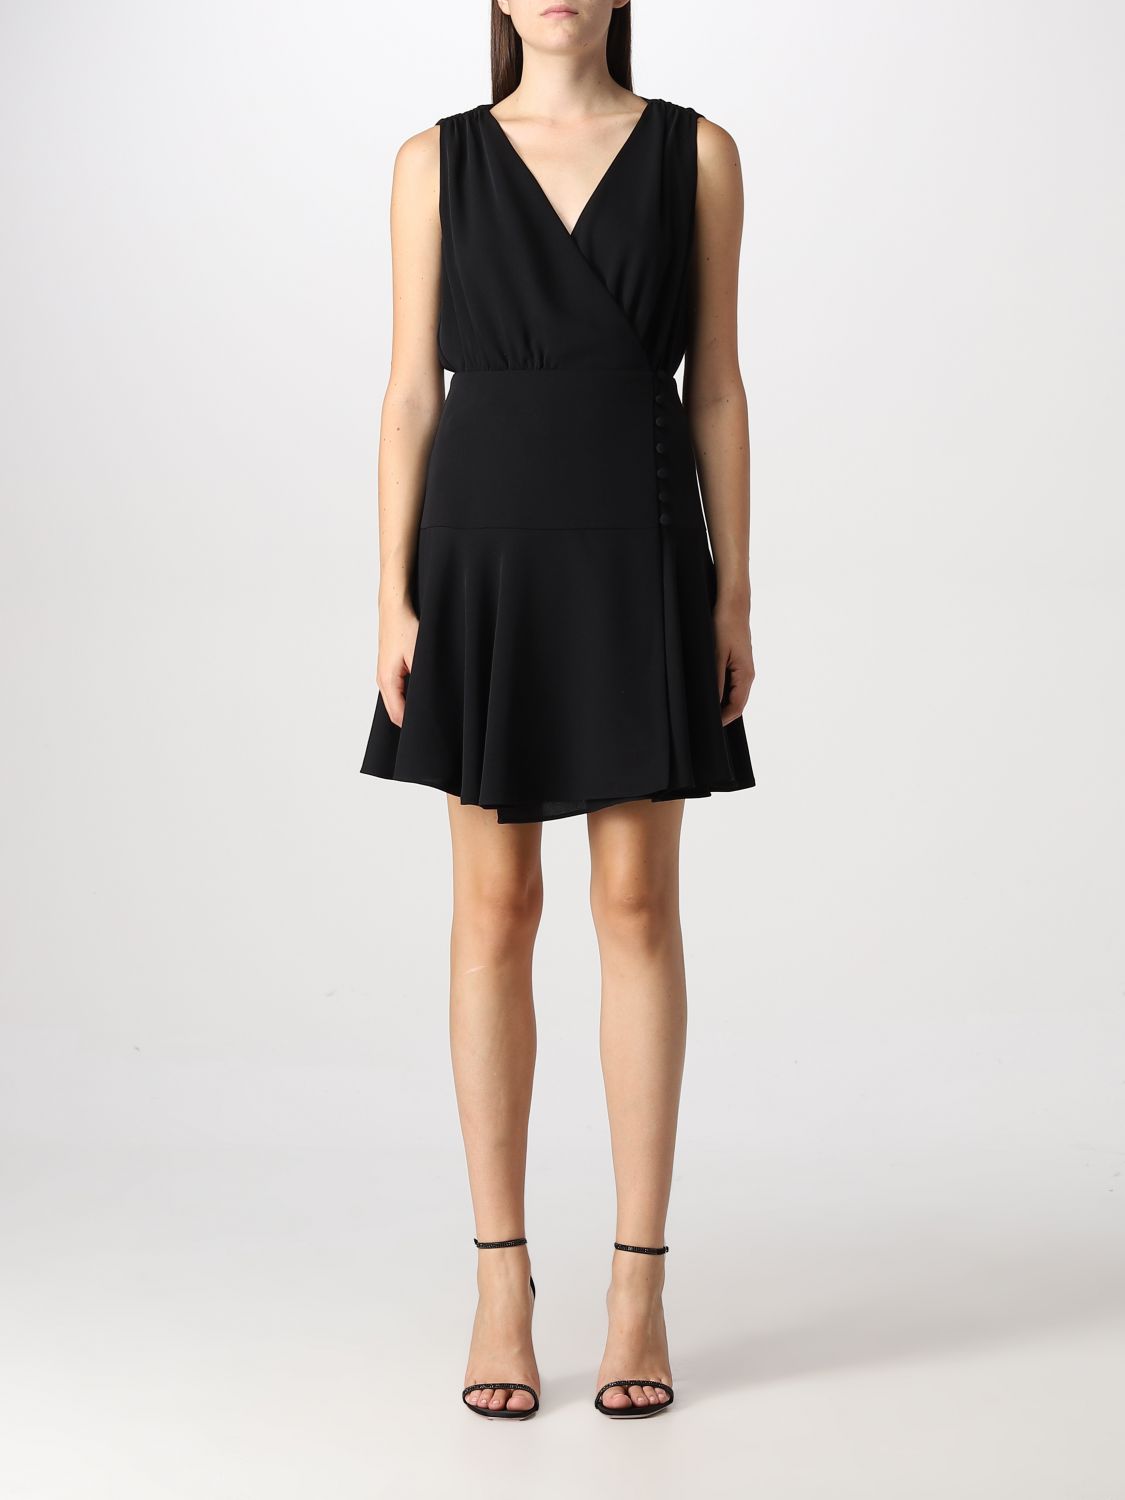 PINKO: dress for woman - Black | Pinko dress 1G184AV0B0 online on ...